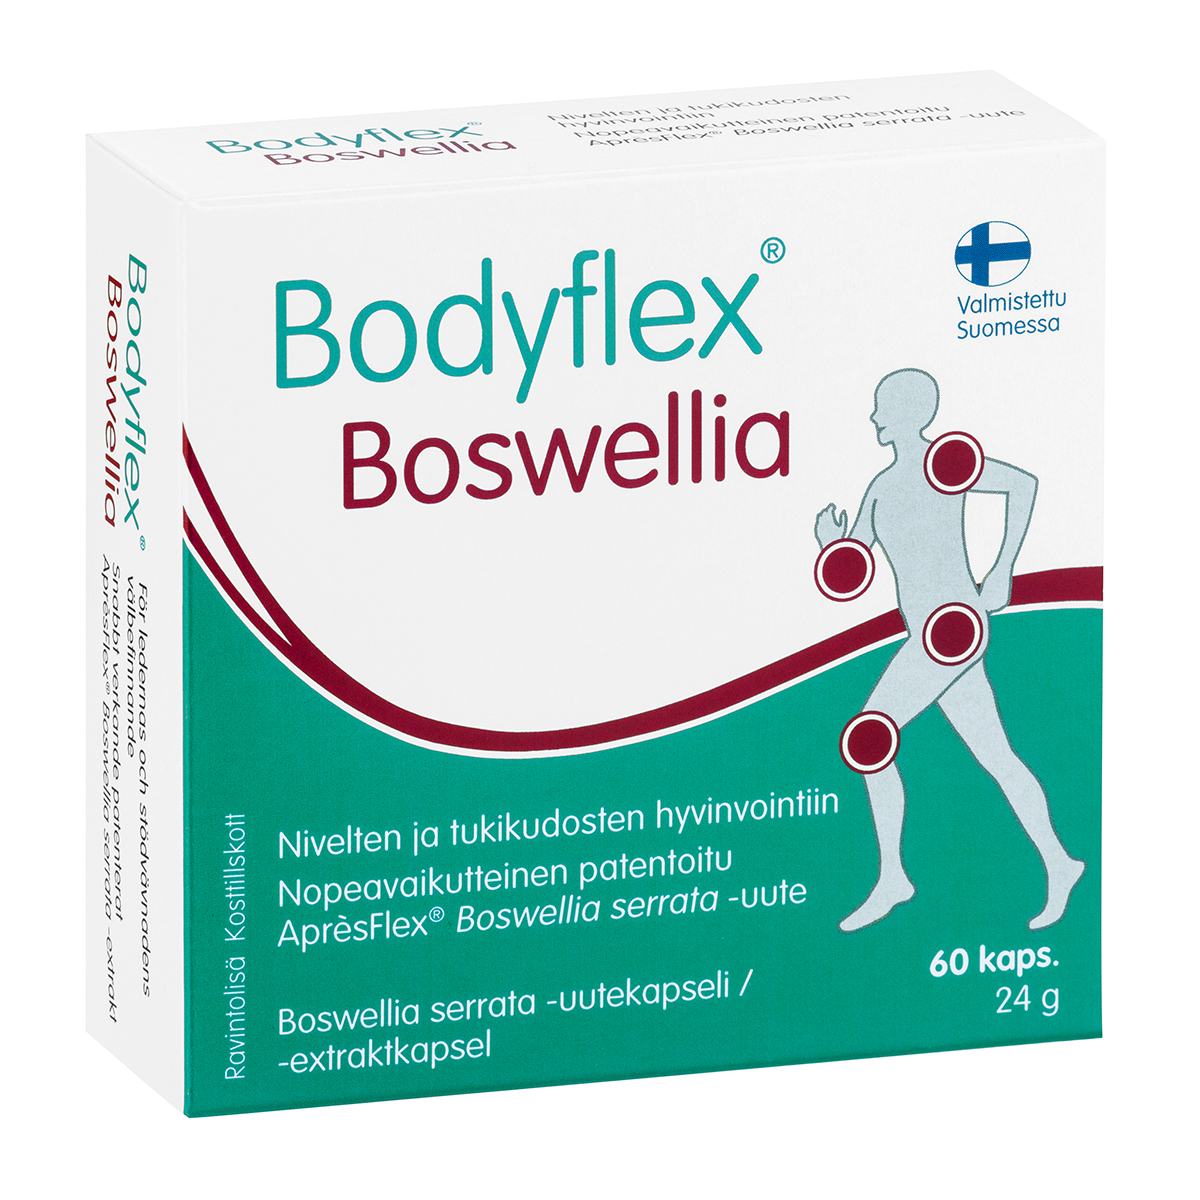 Bodyflex® Boswellia - Hankintatukku